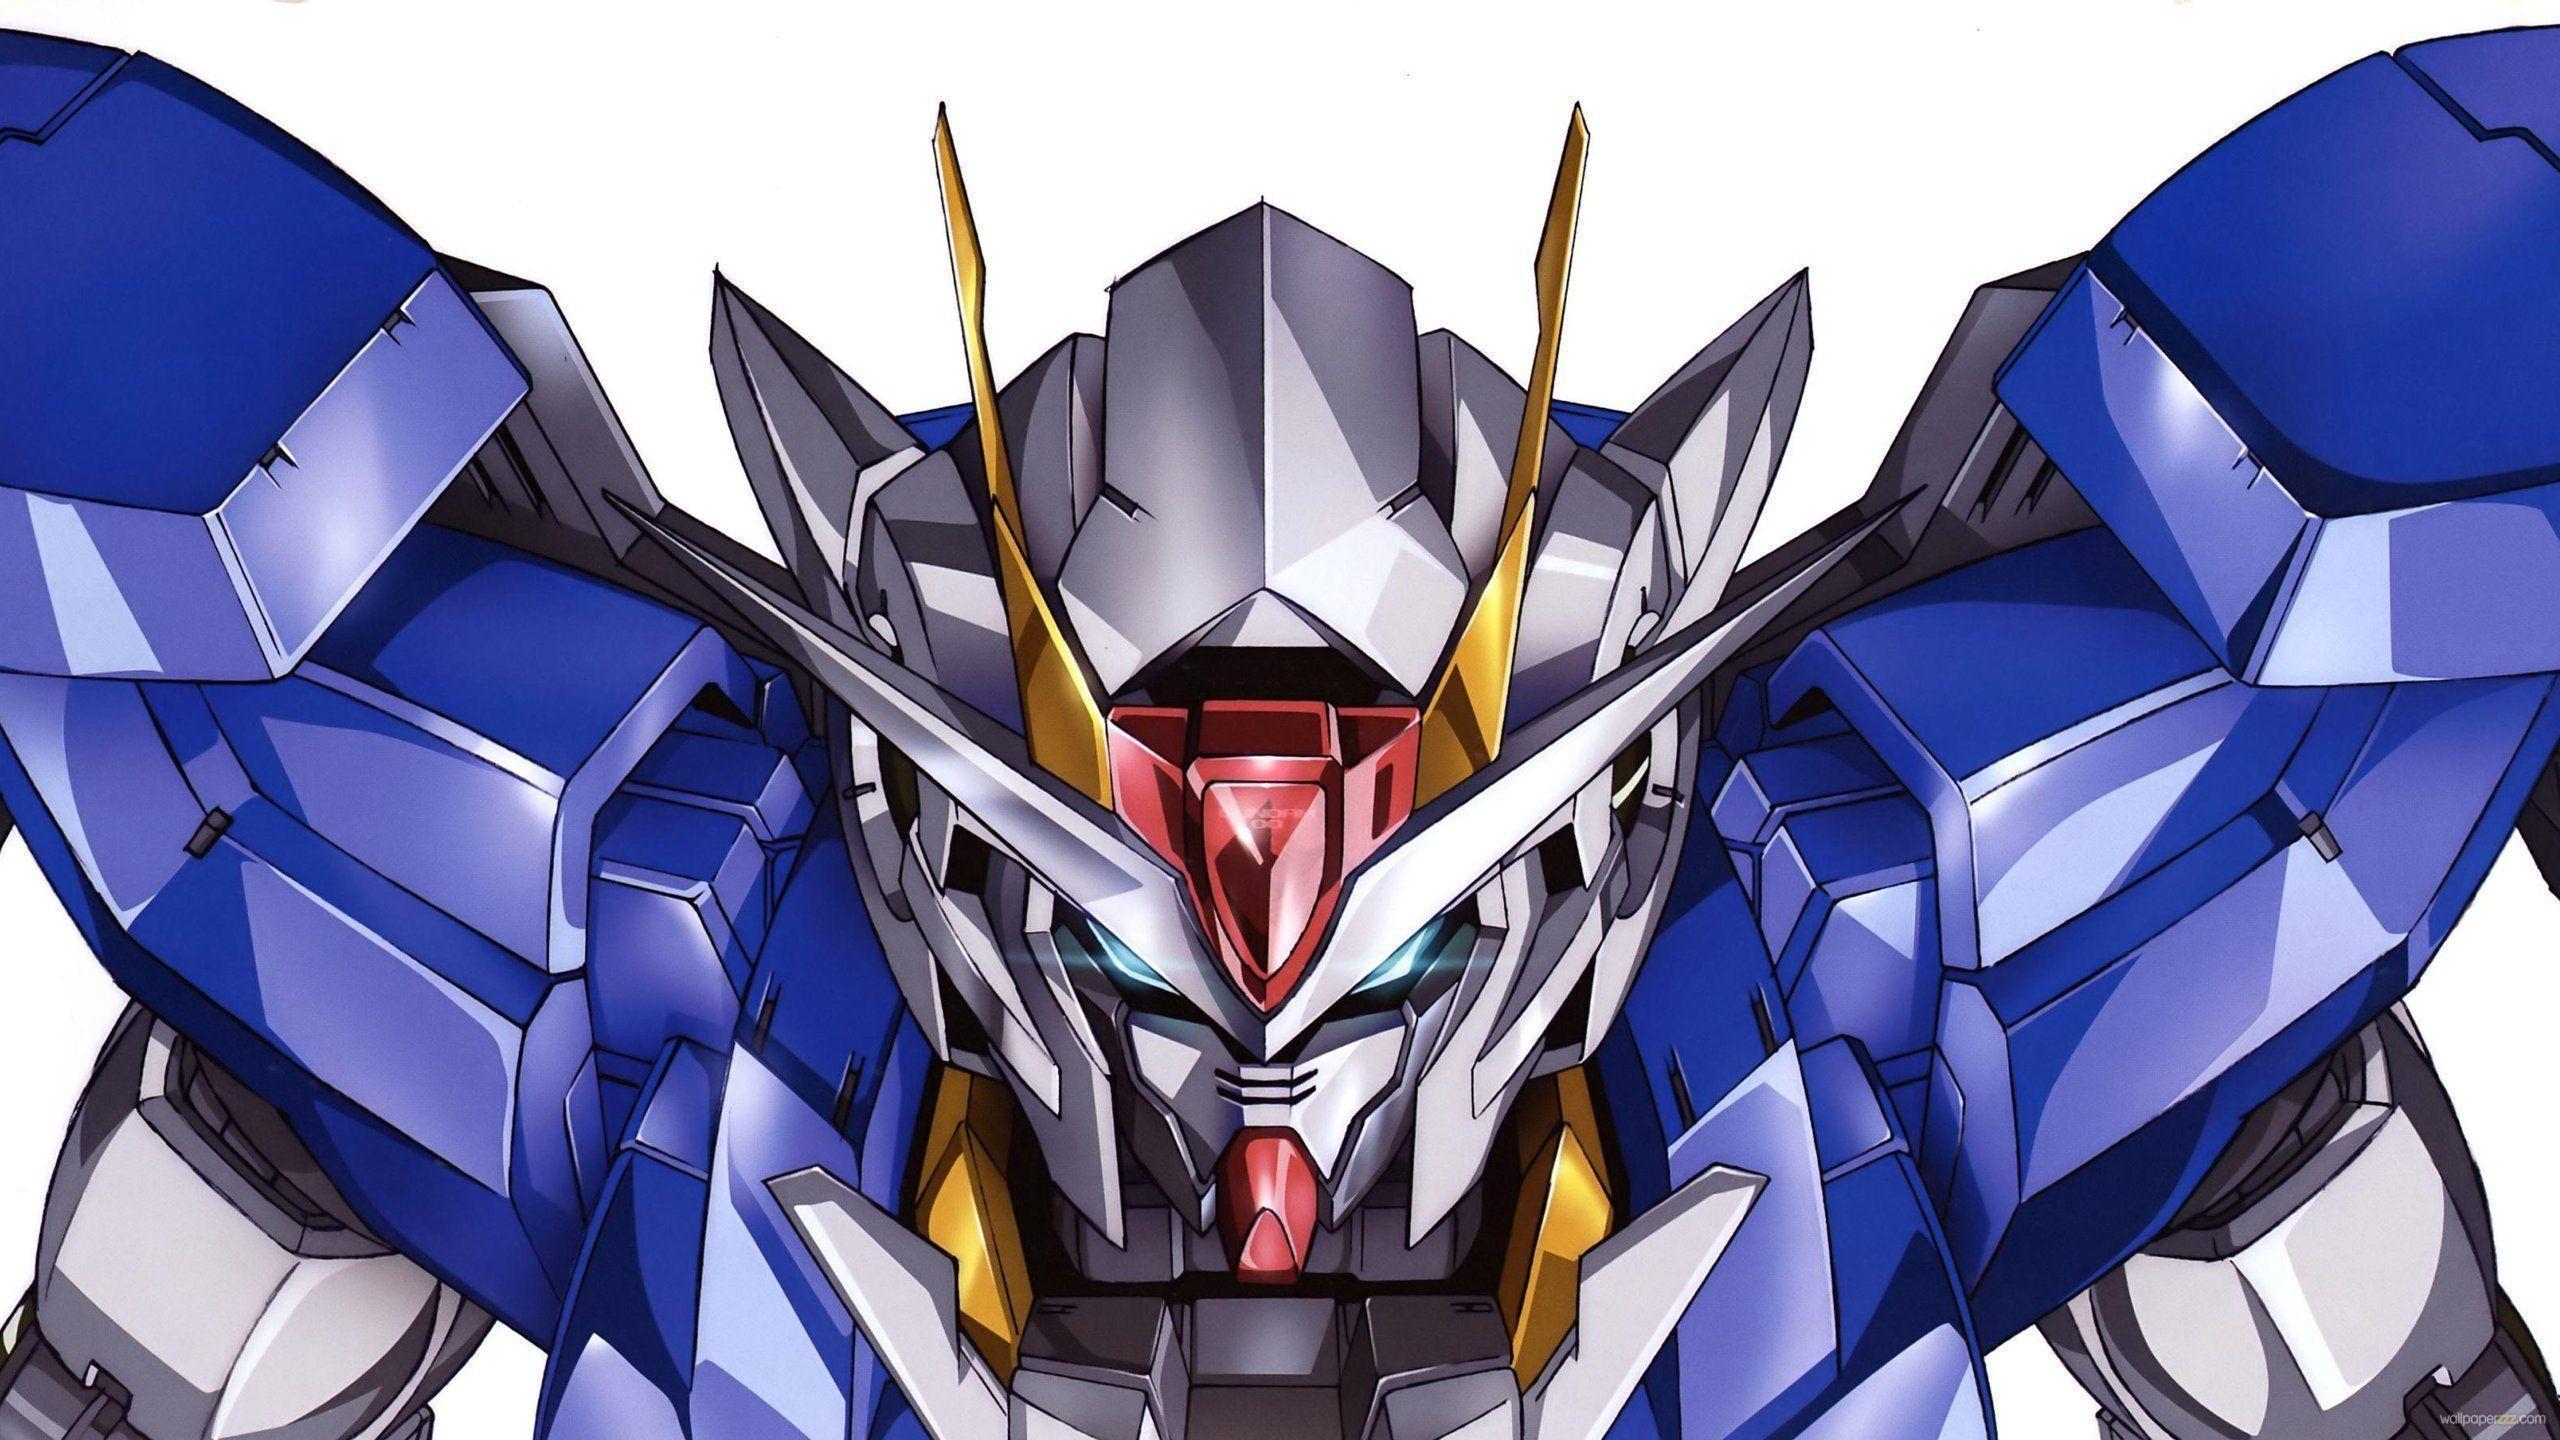 2560 x 1440 · jpeg - Gundam 00 HD Wallpapers - Wallpaper Cave